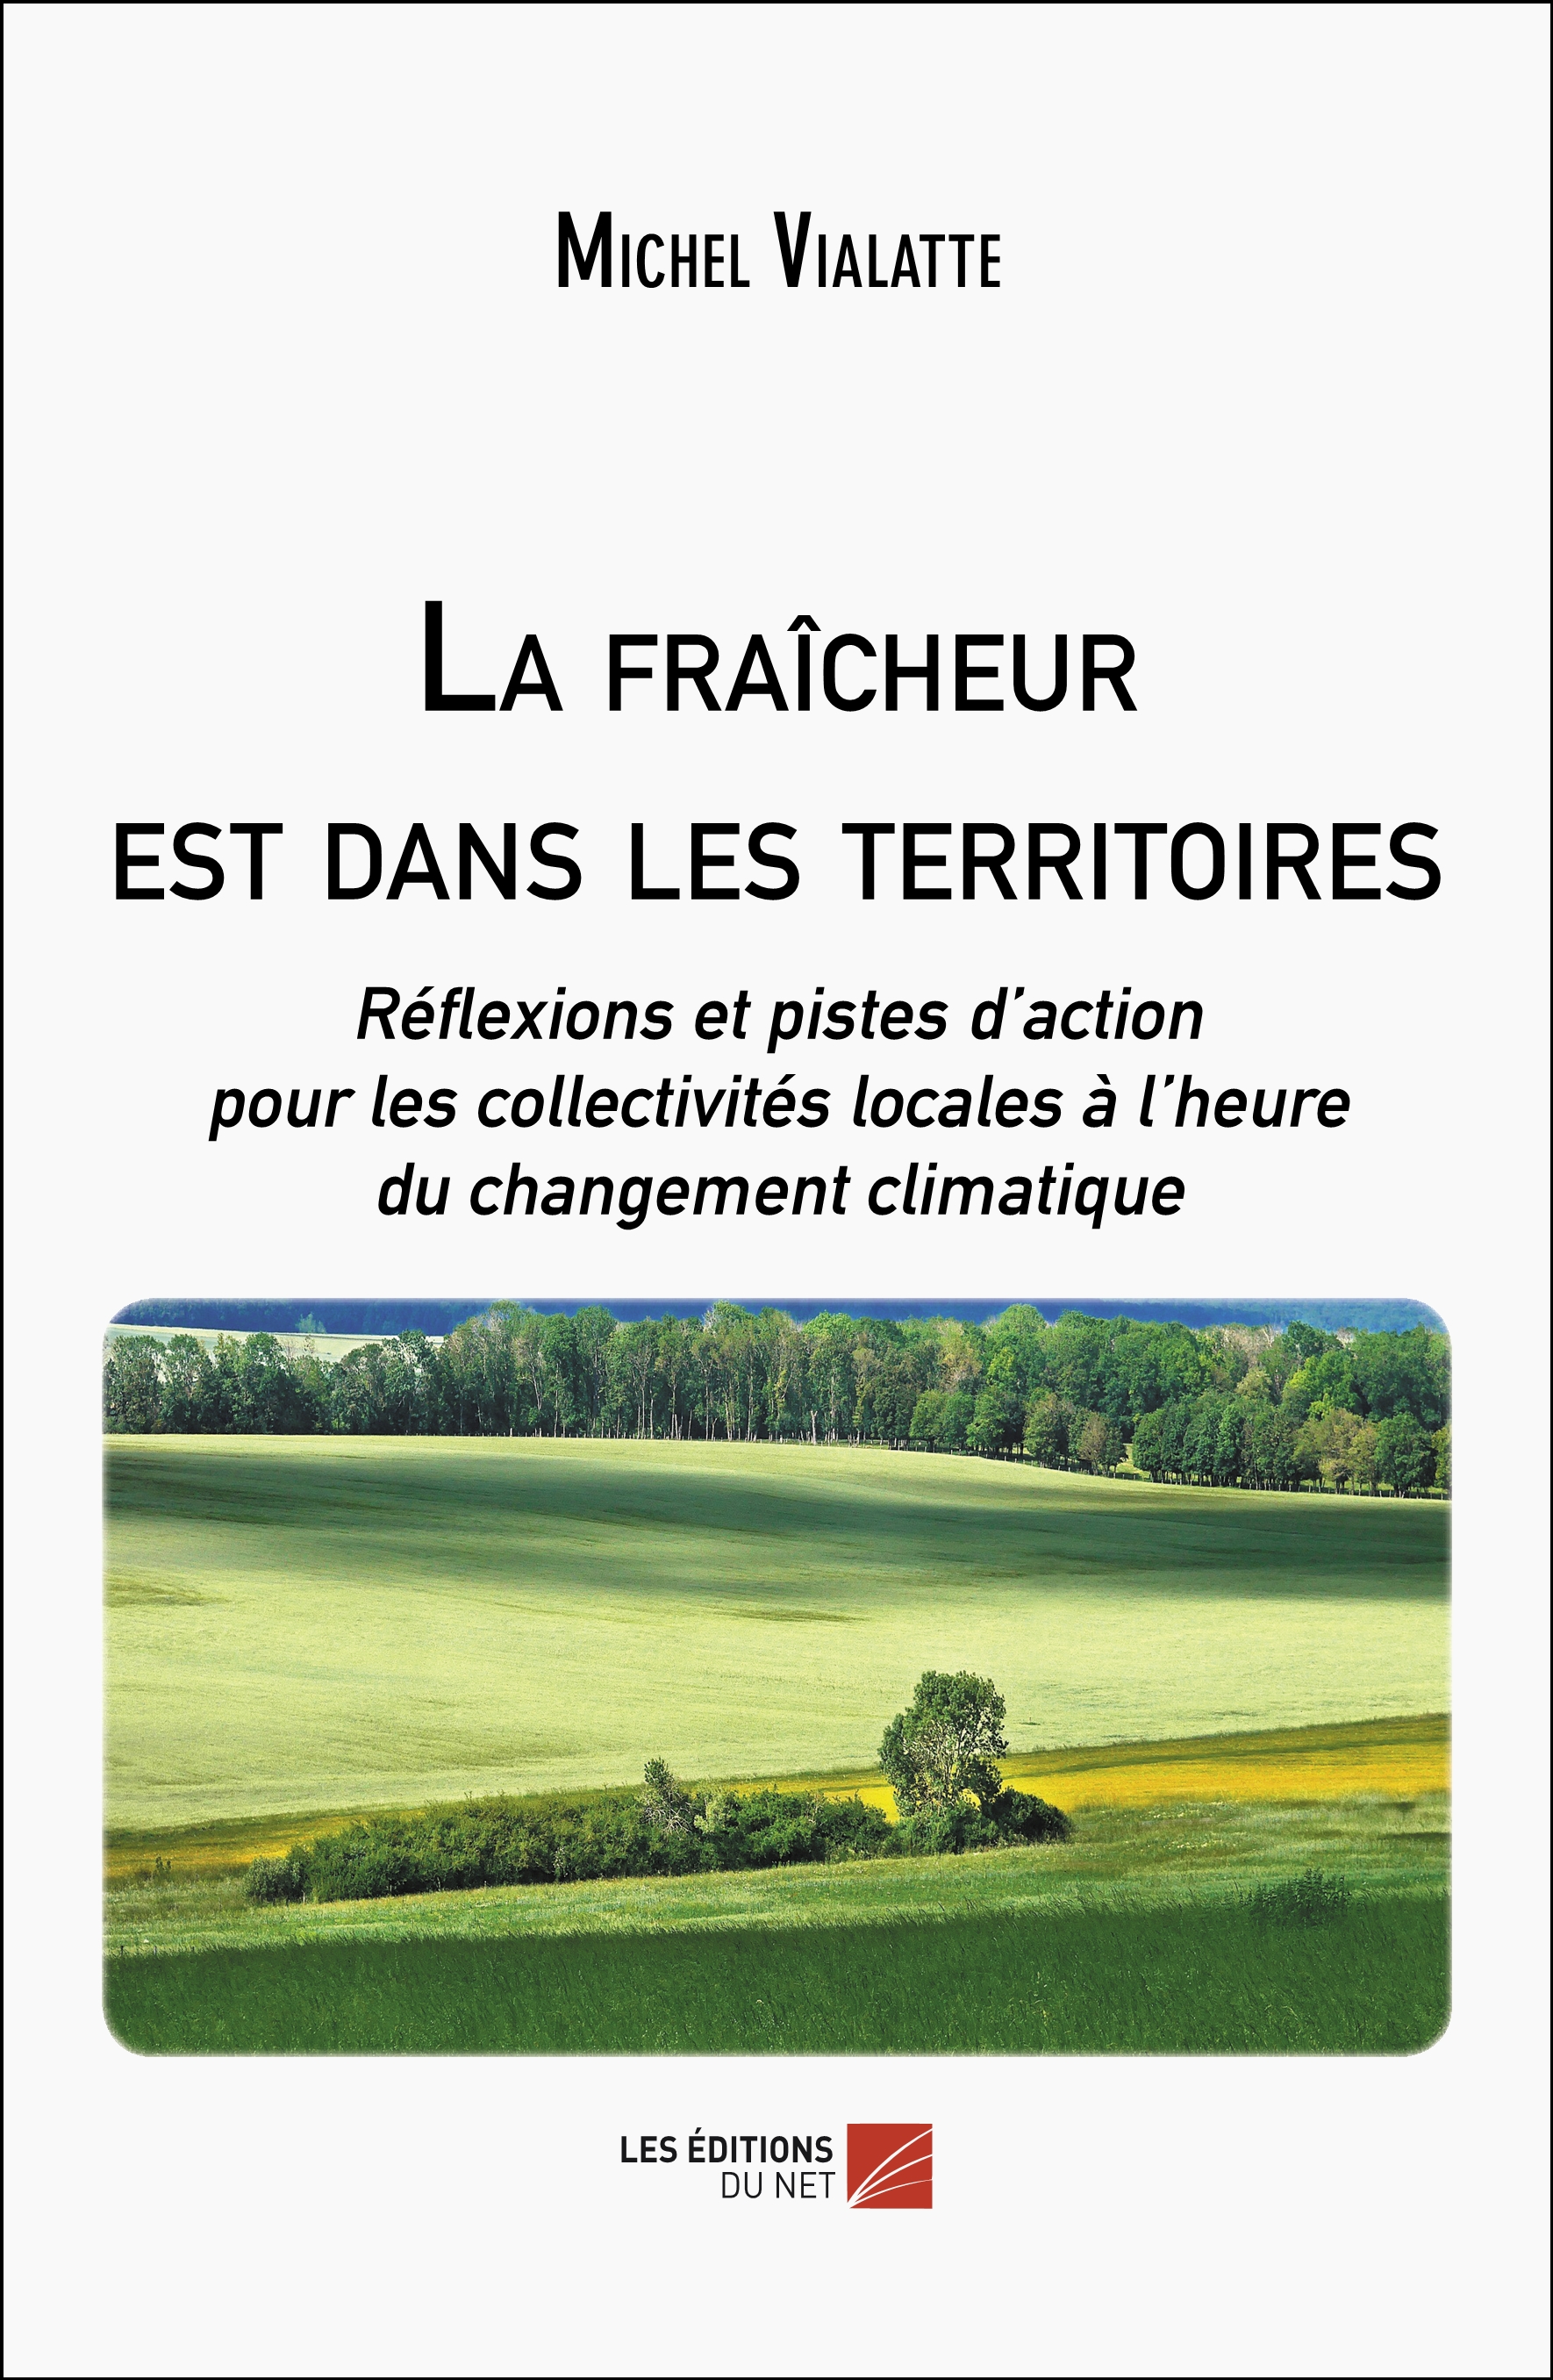 Les territoires de France face au changement climatique